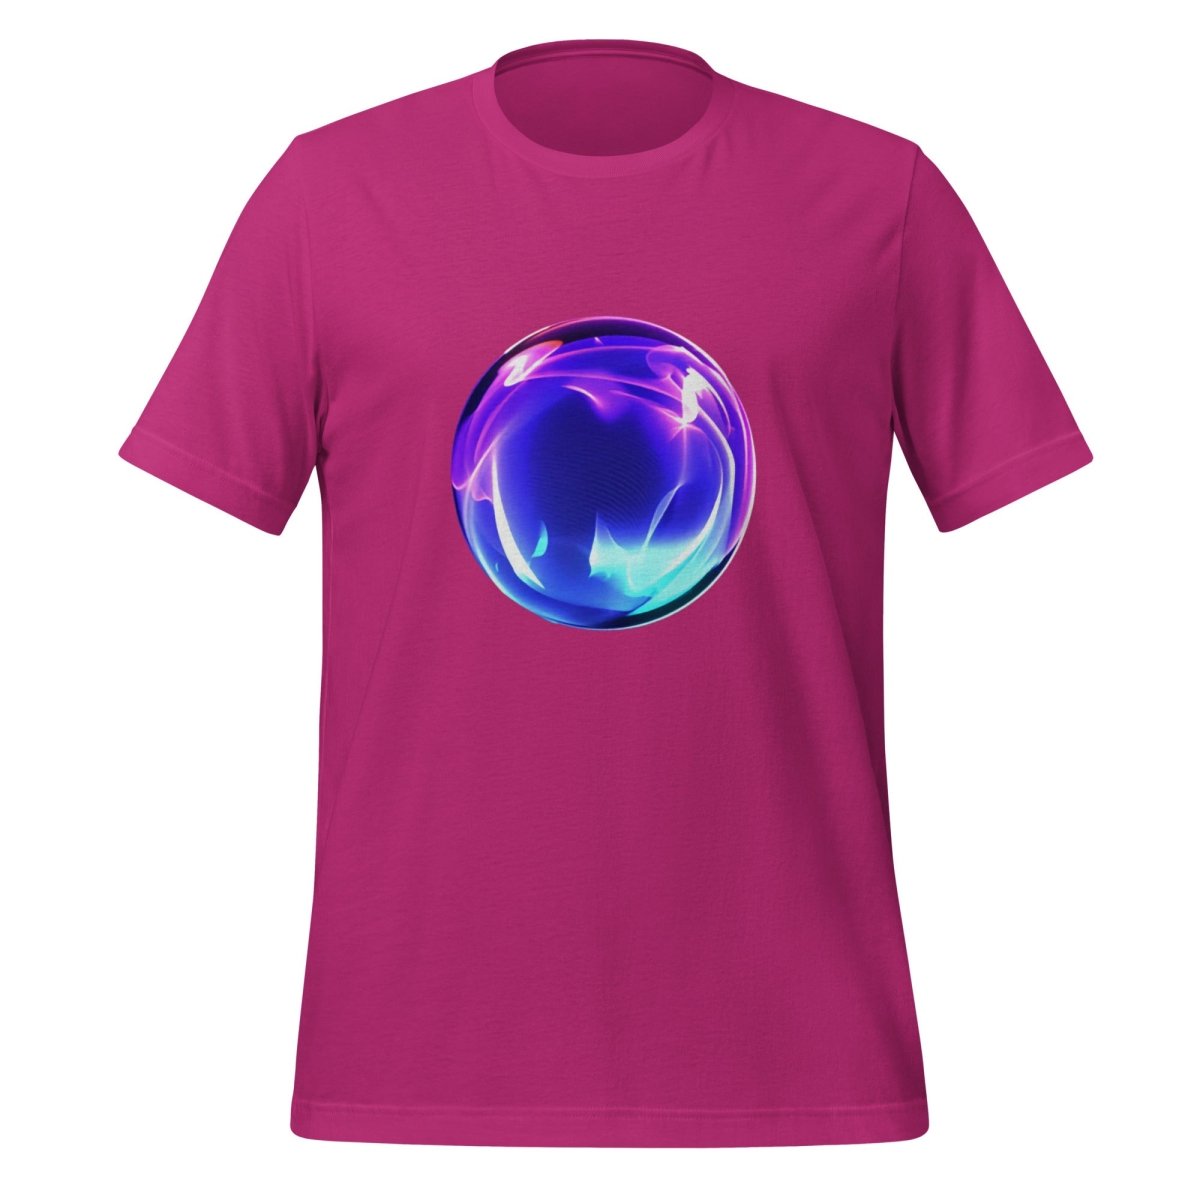 AI Assistant Artwork T - Shirt (unisex) - Berry - AI Store